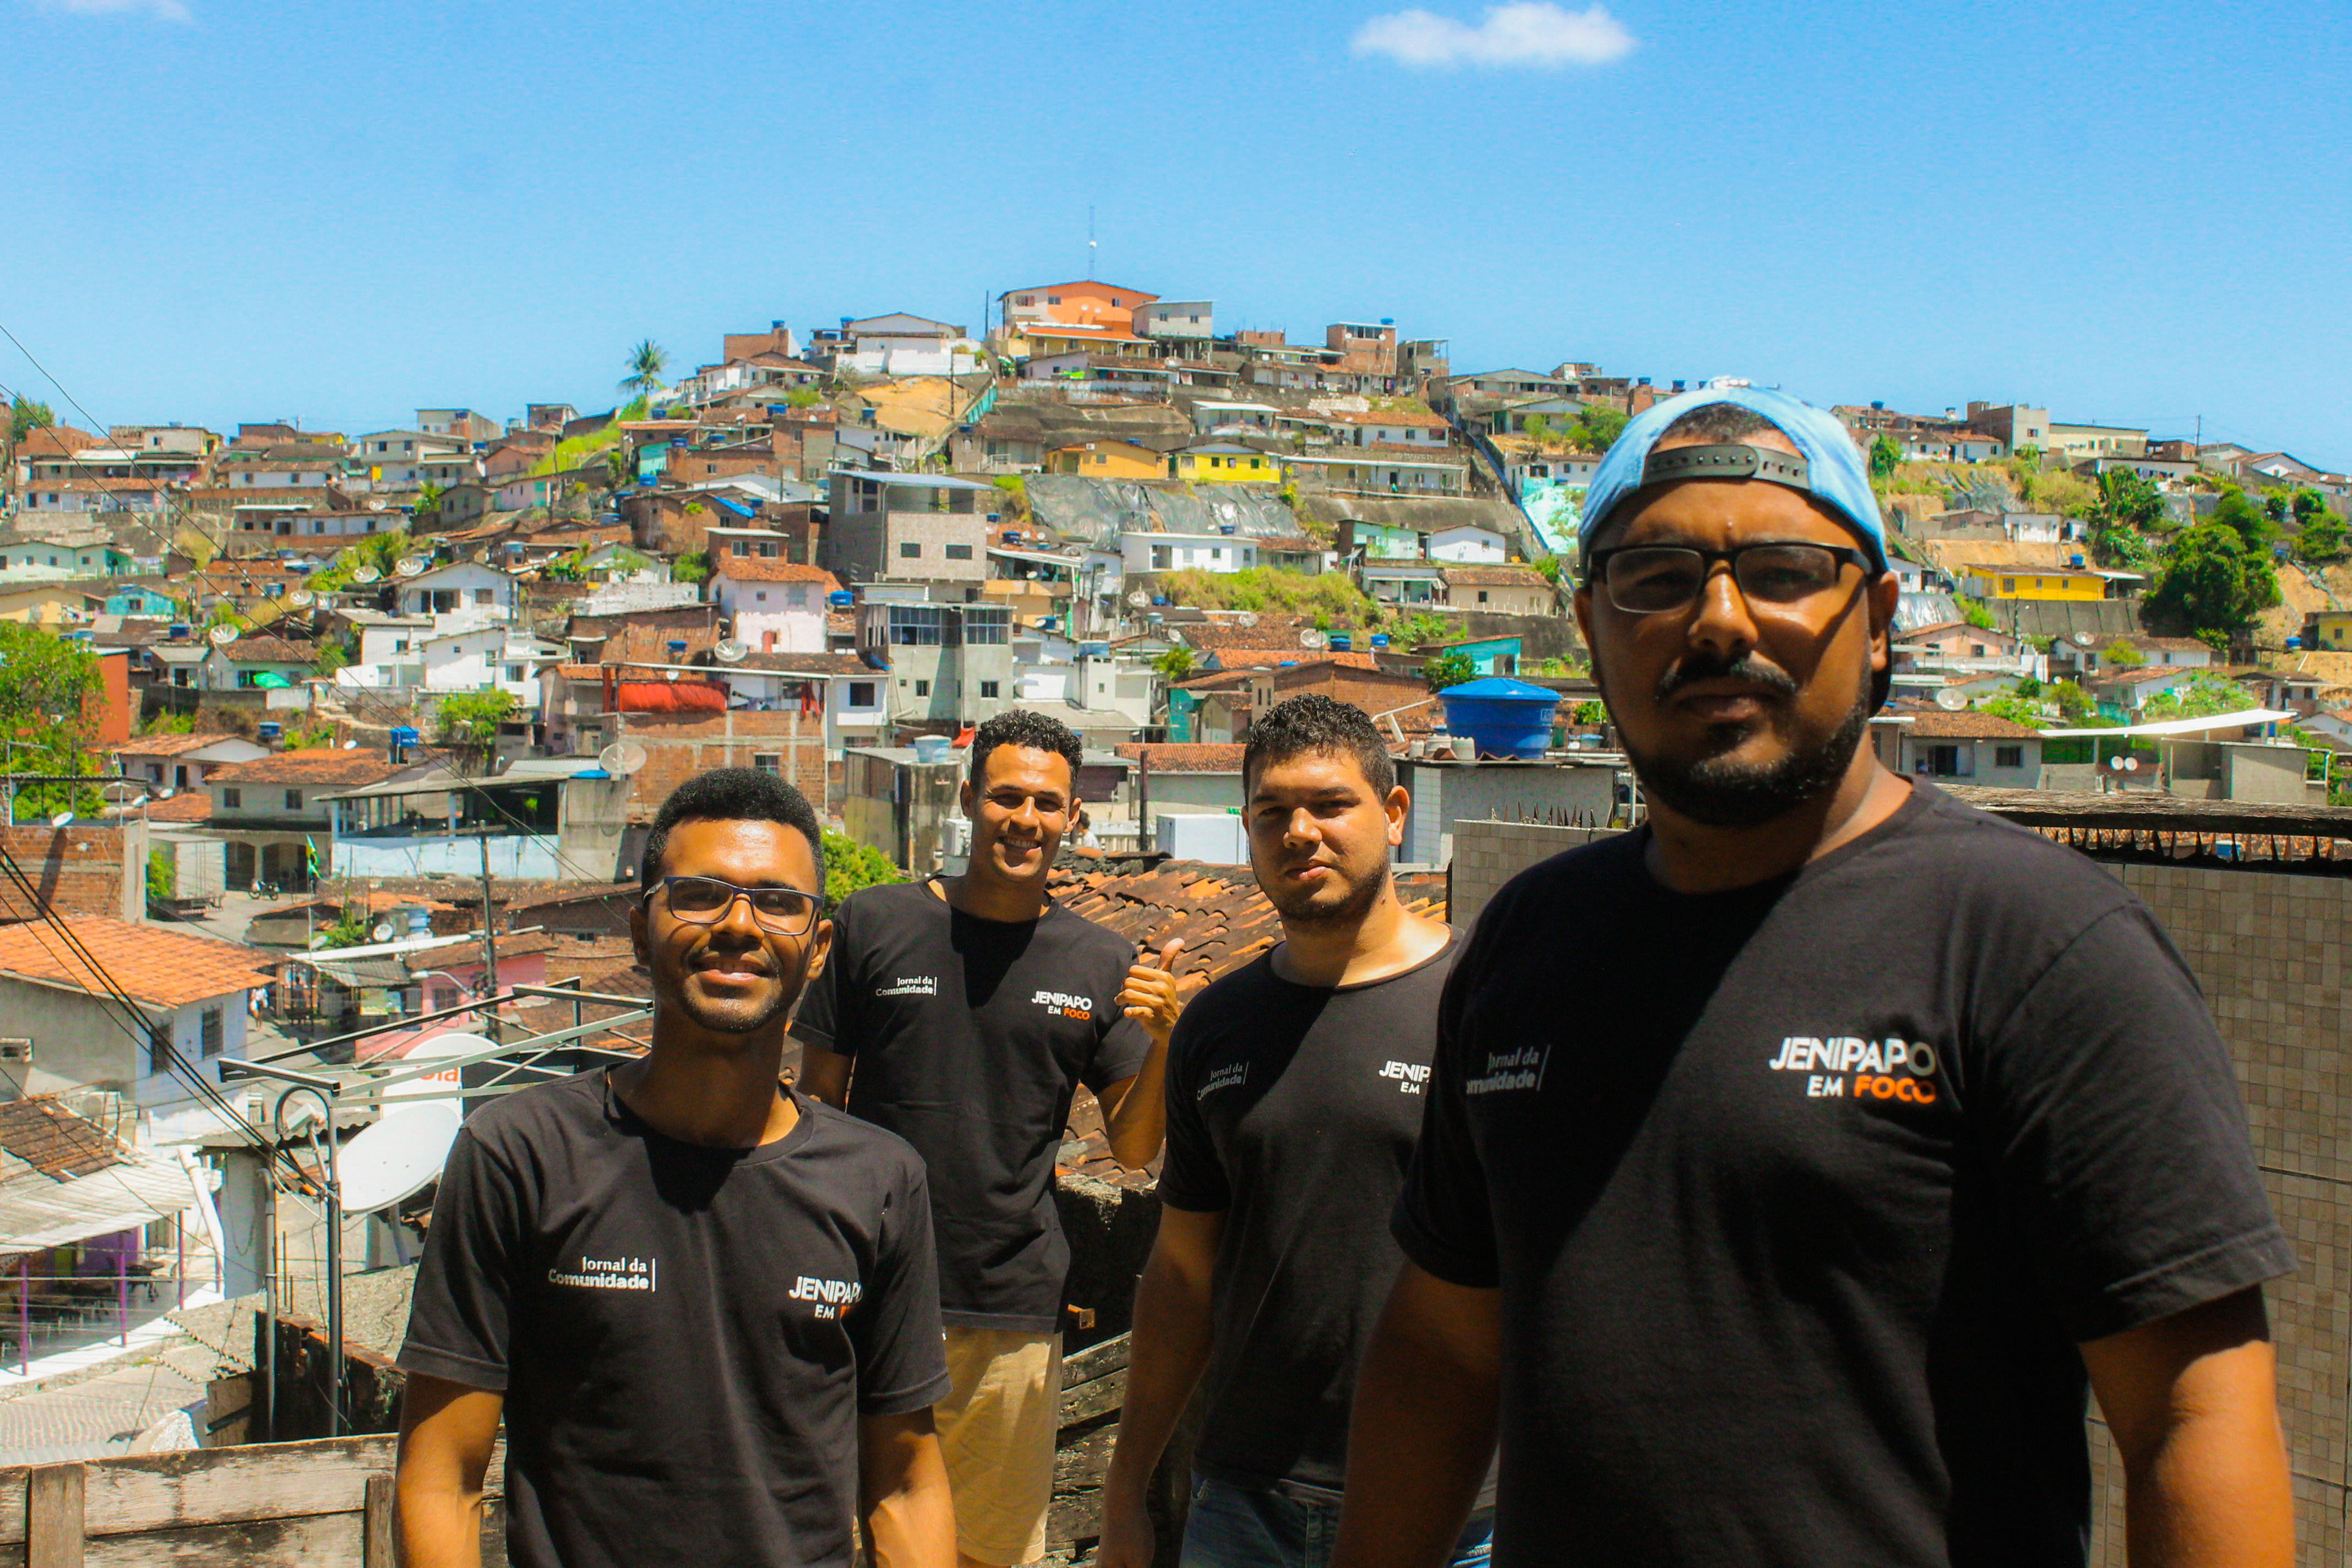 Jenipapo em foco: a comunicação popular da favela